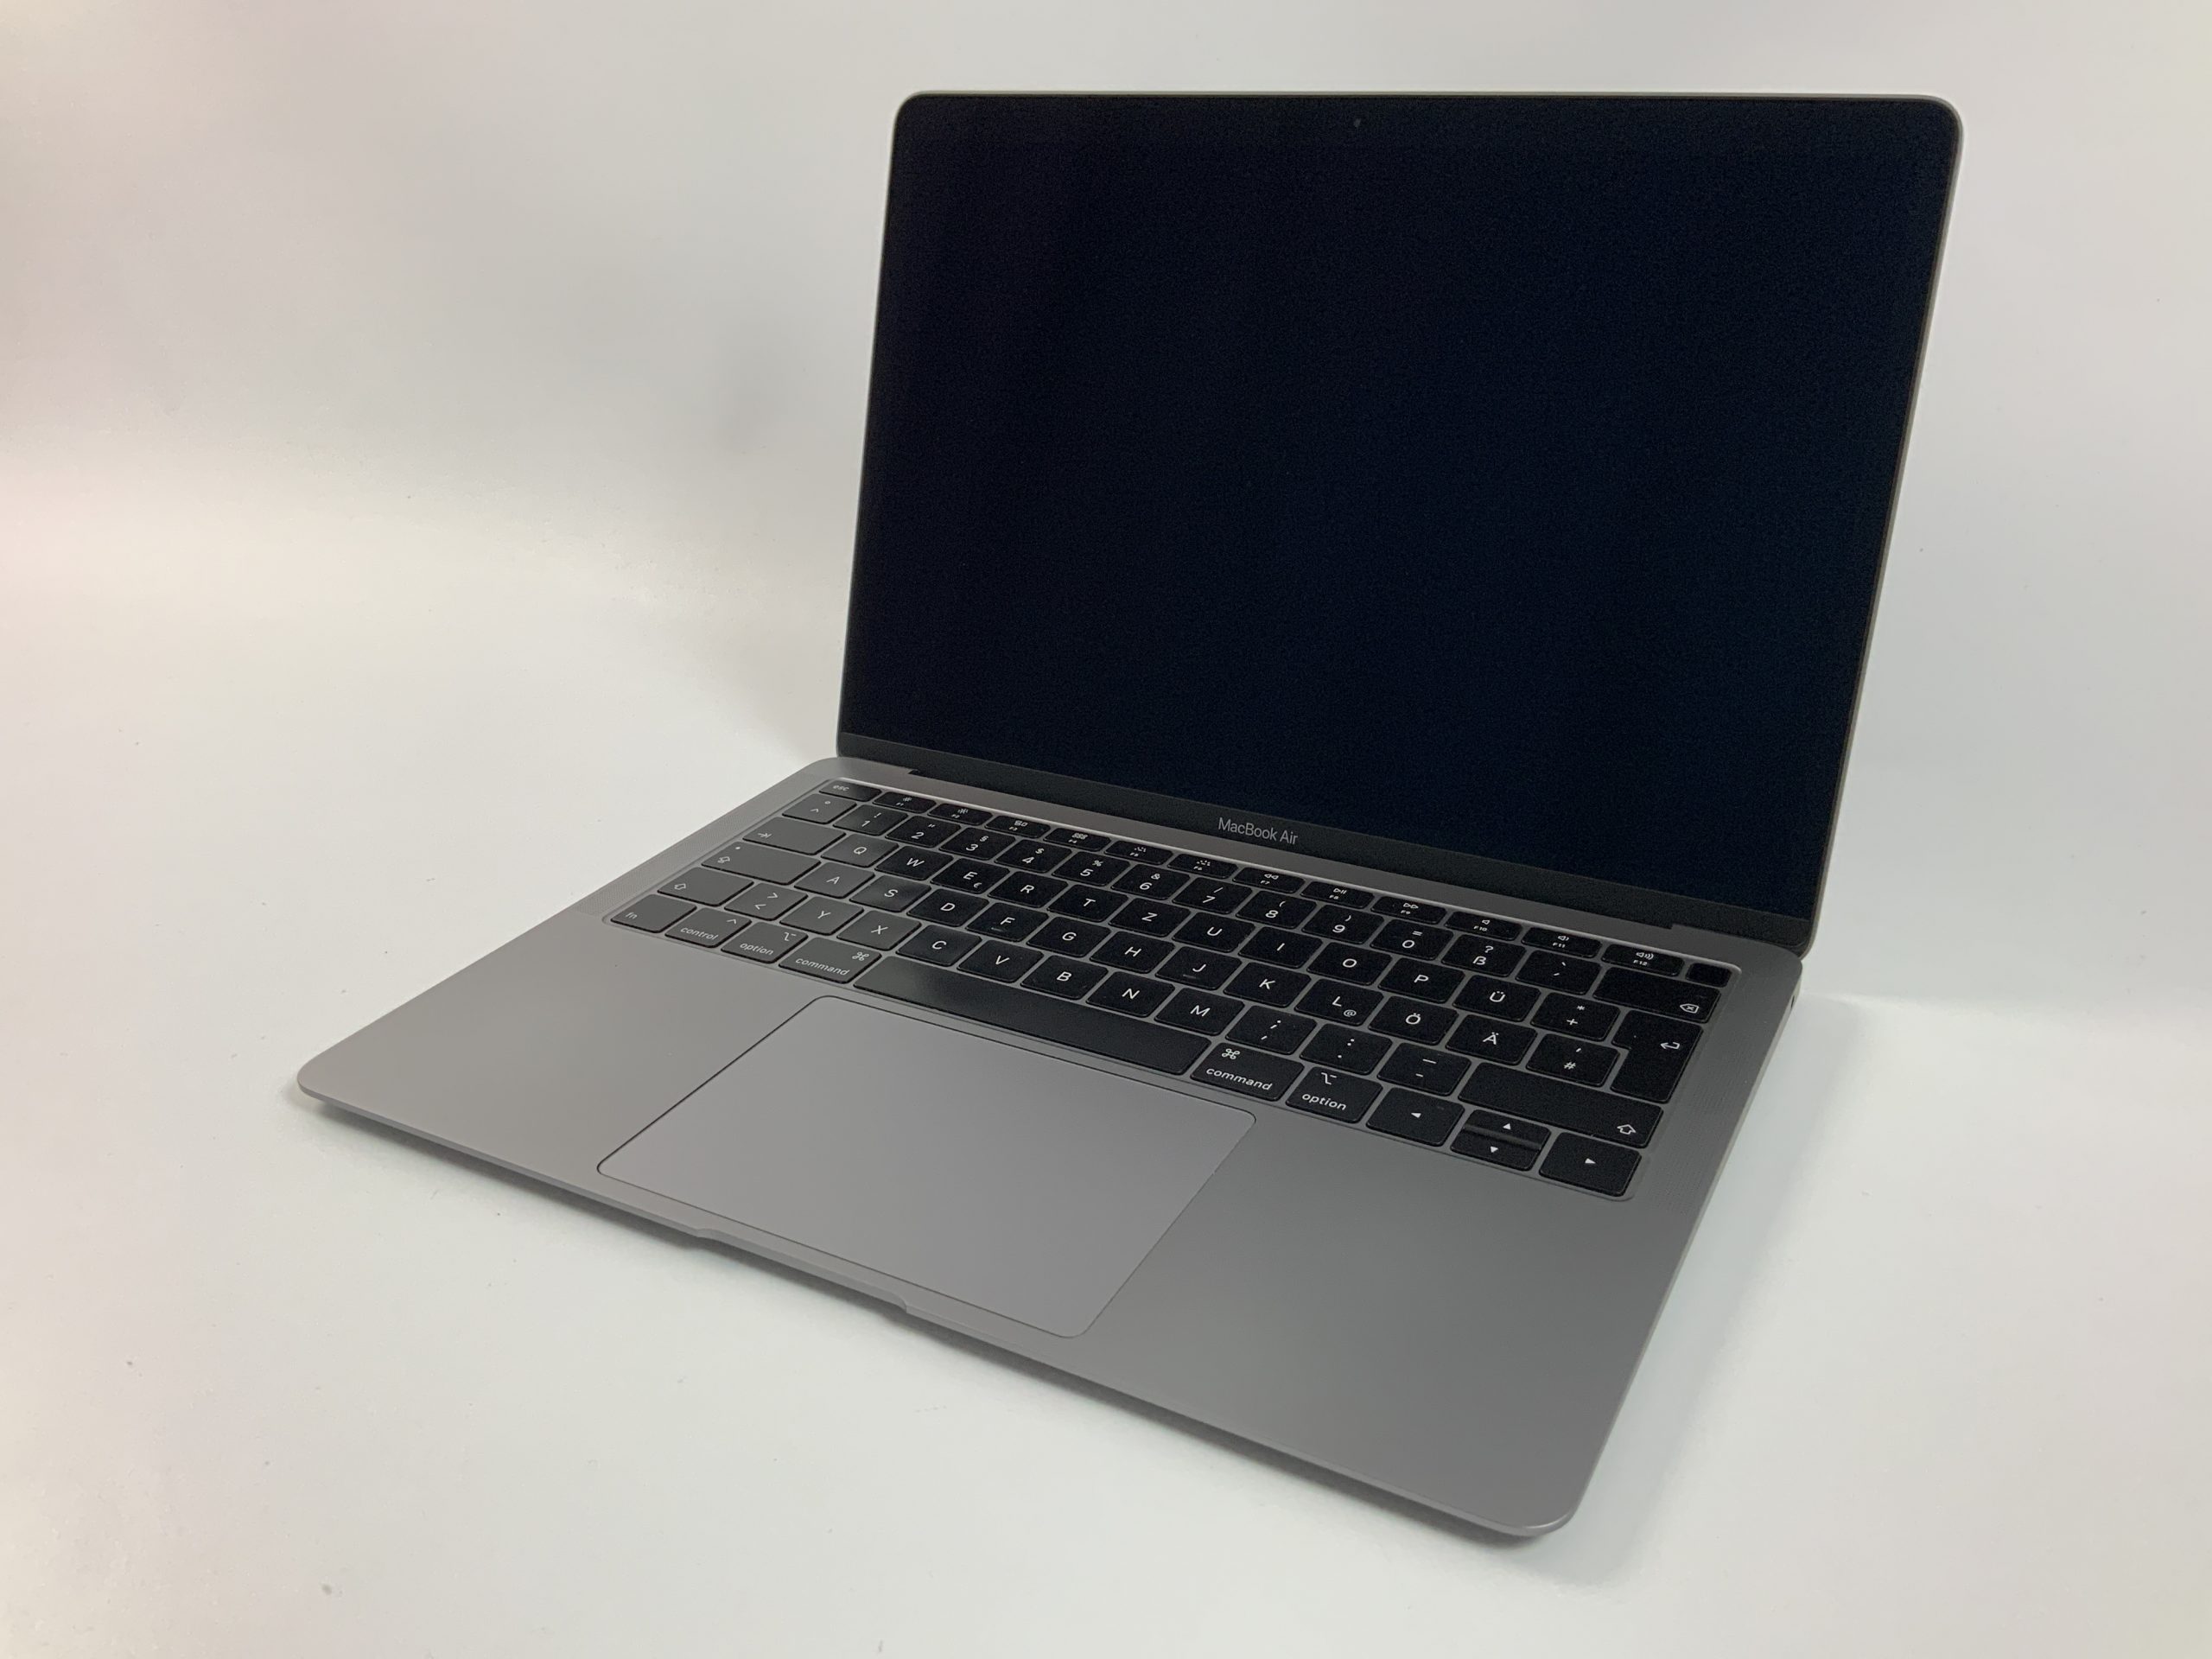 MacBook Air 13" Mid 2019 (Intel Core i5 1.6 GHz 8 GB RAM 512 GB SSD), Space Gray, Intel Core i5 1.6 GHz, 8 GB RAM, 512 GB SSD, obraz 1